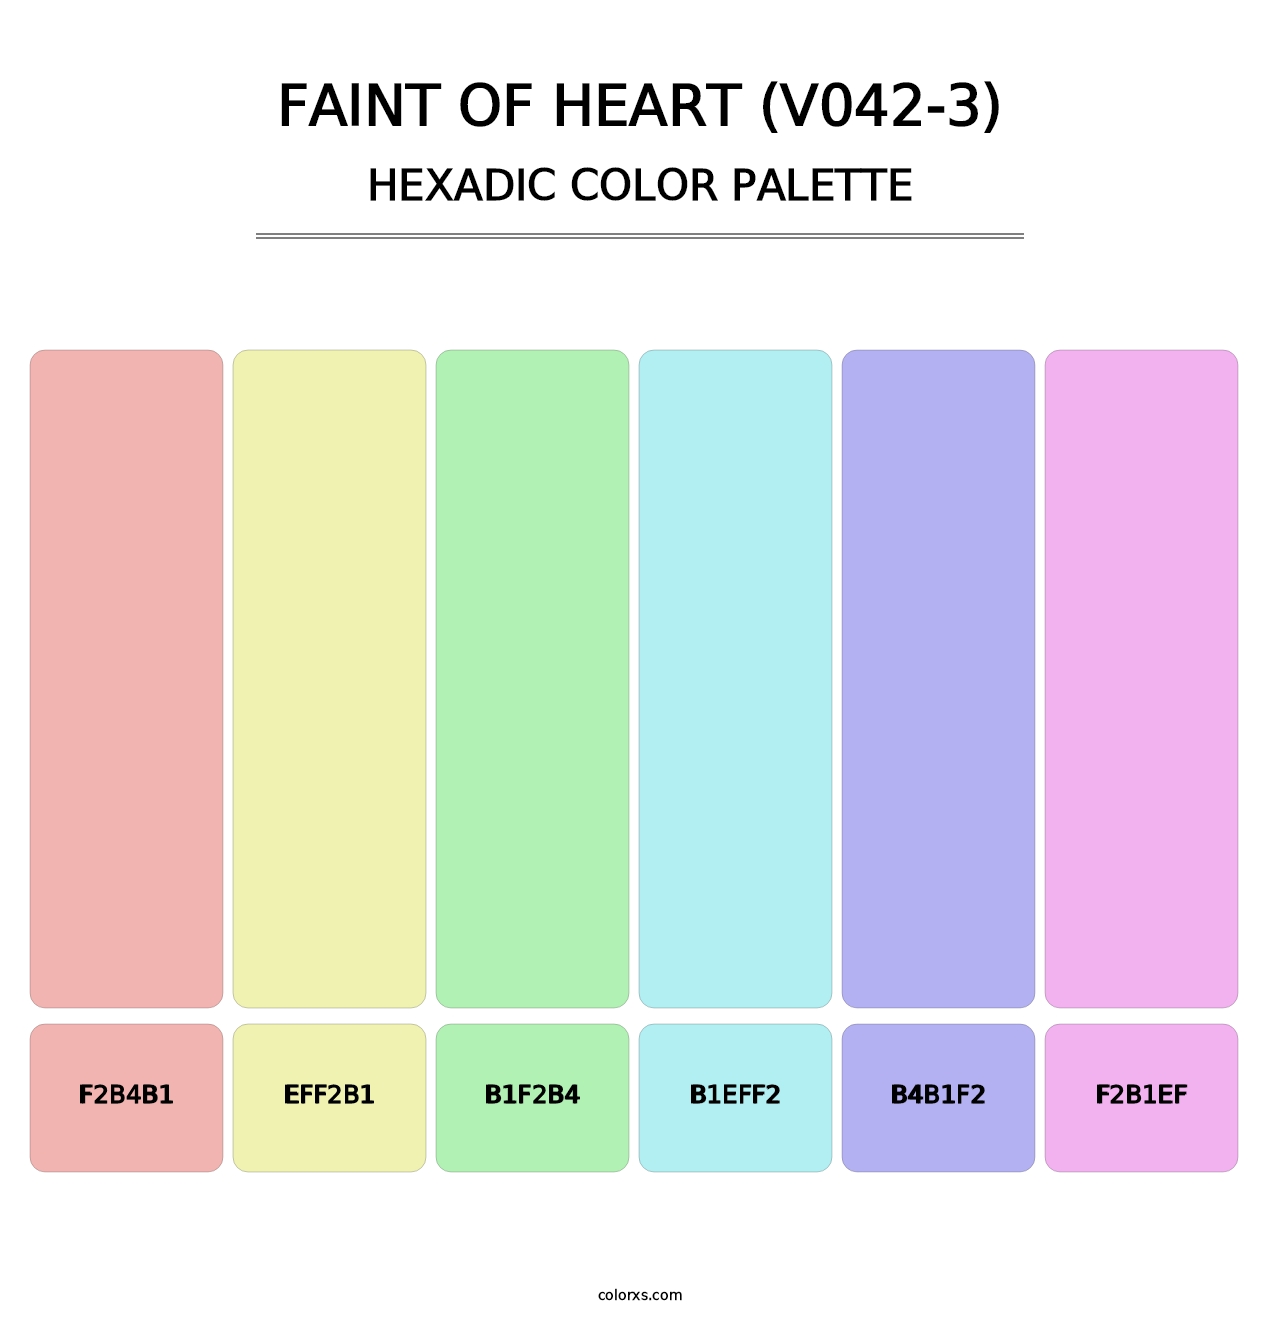 Faint of Heart (V042-3) - Hexadic Color Palette